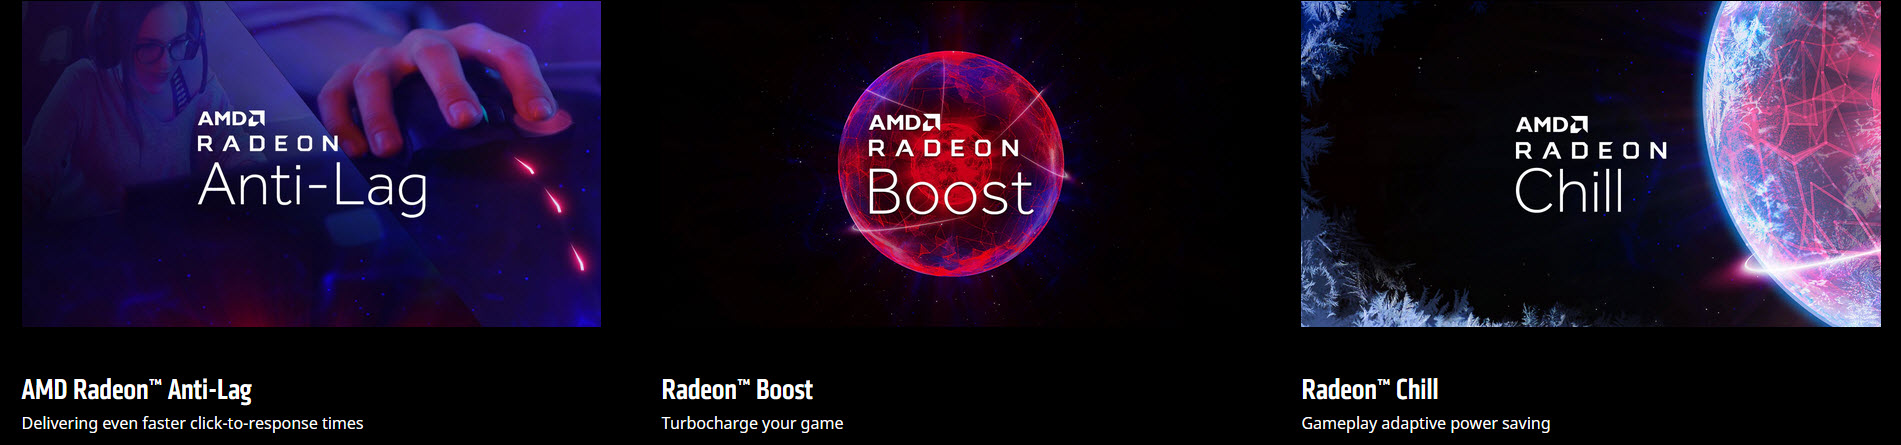 2019 12 13 2 32 351 เพิ่มประสบการณ์การใช้งานกราฟิกการ์ด AMD Radeon™ ของคุณด้วยซอฟต์แวร์ AMD Radeon™ Software Adrenalin 2020 Edition